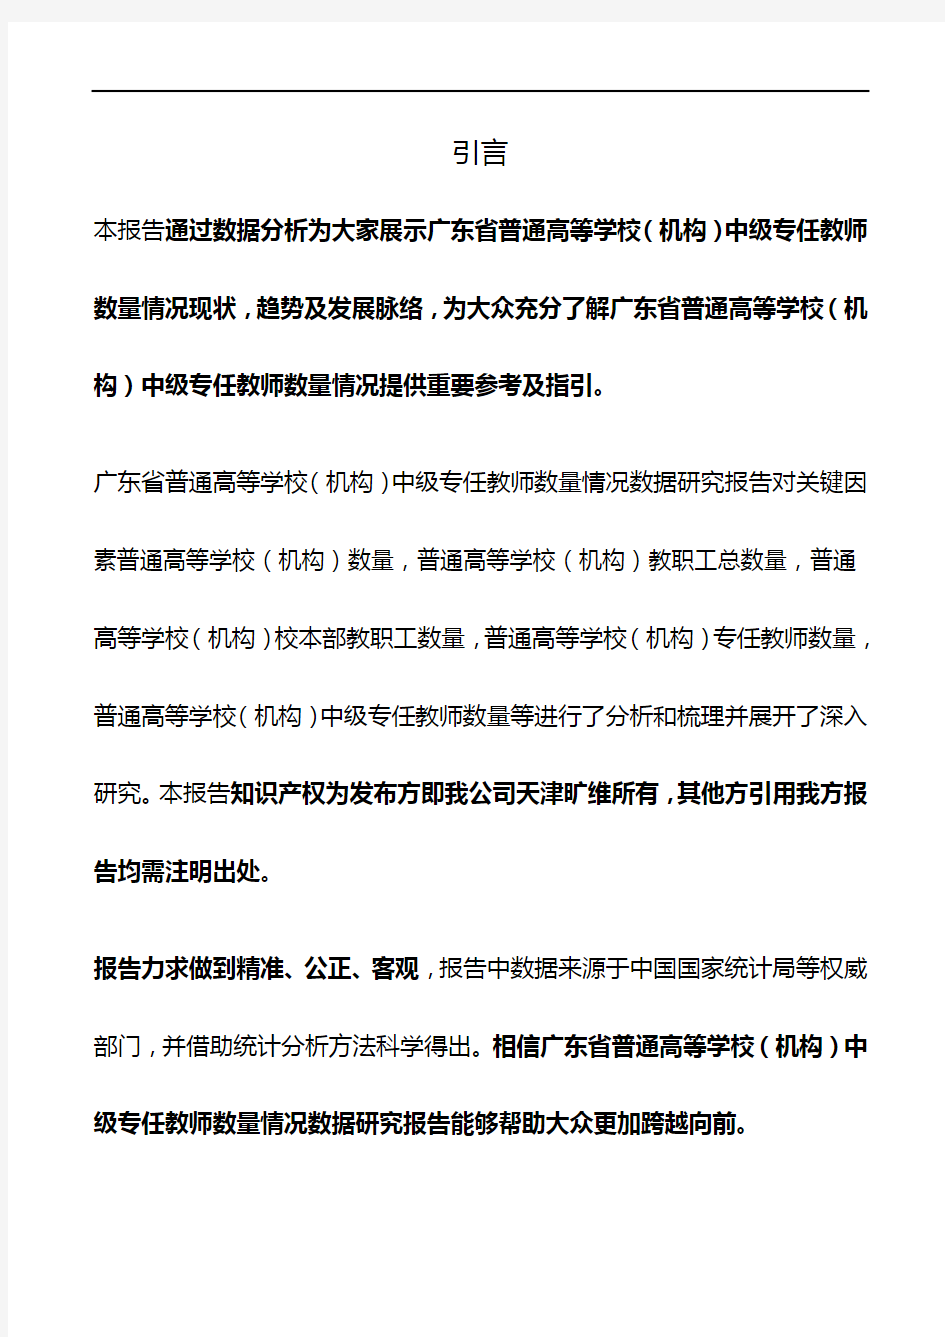 广东省普通高等学校(机构)中级专任教师数量情况3年数据研究报告2019版